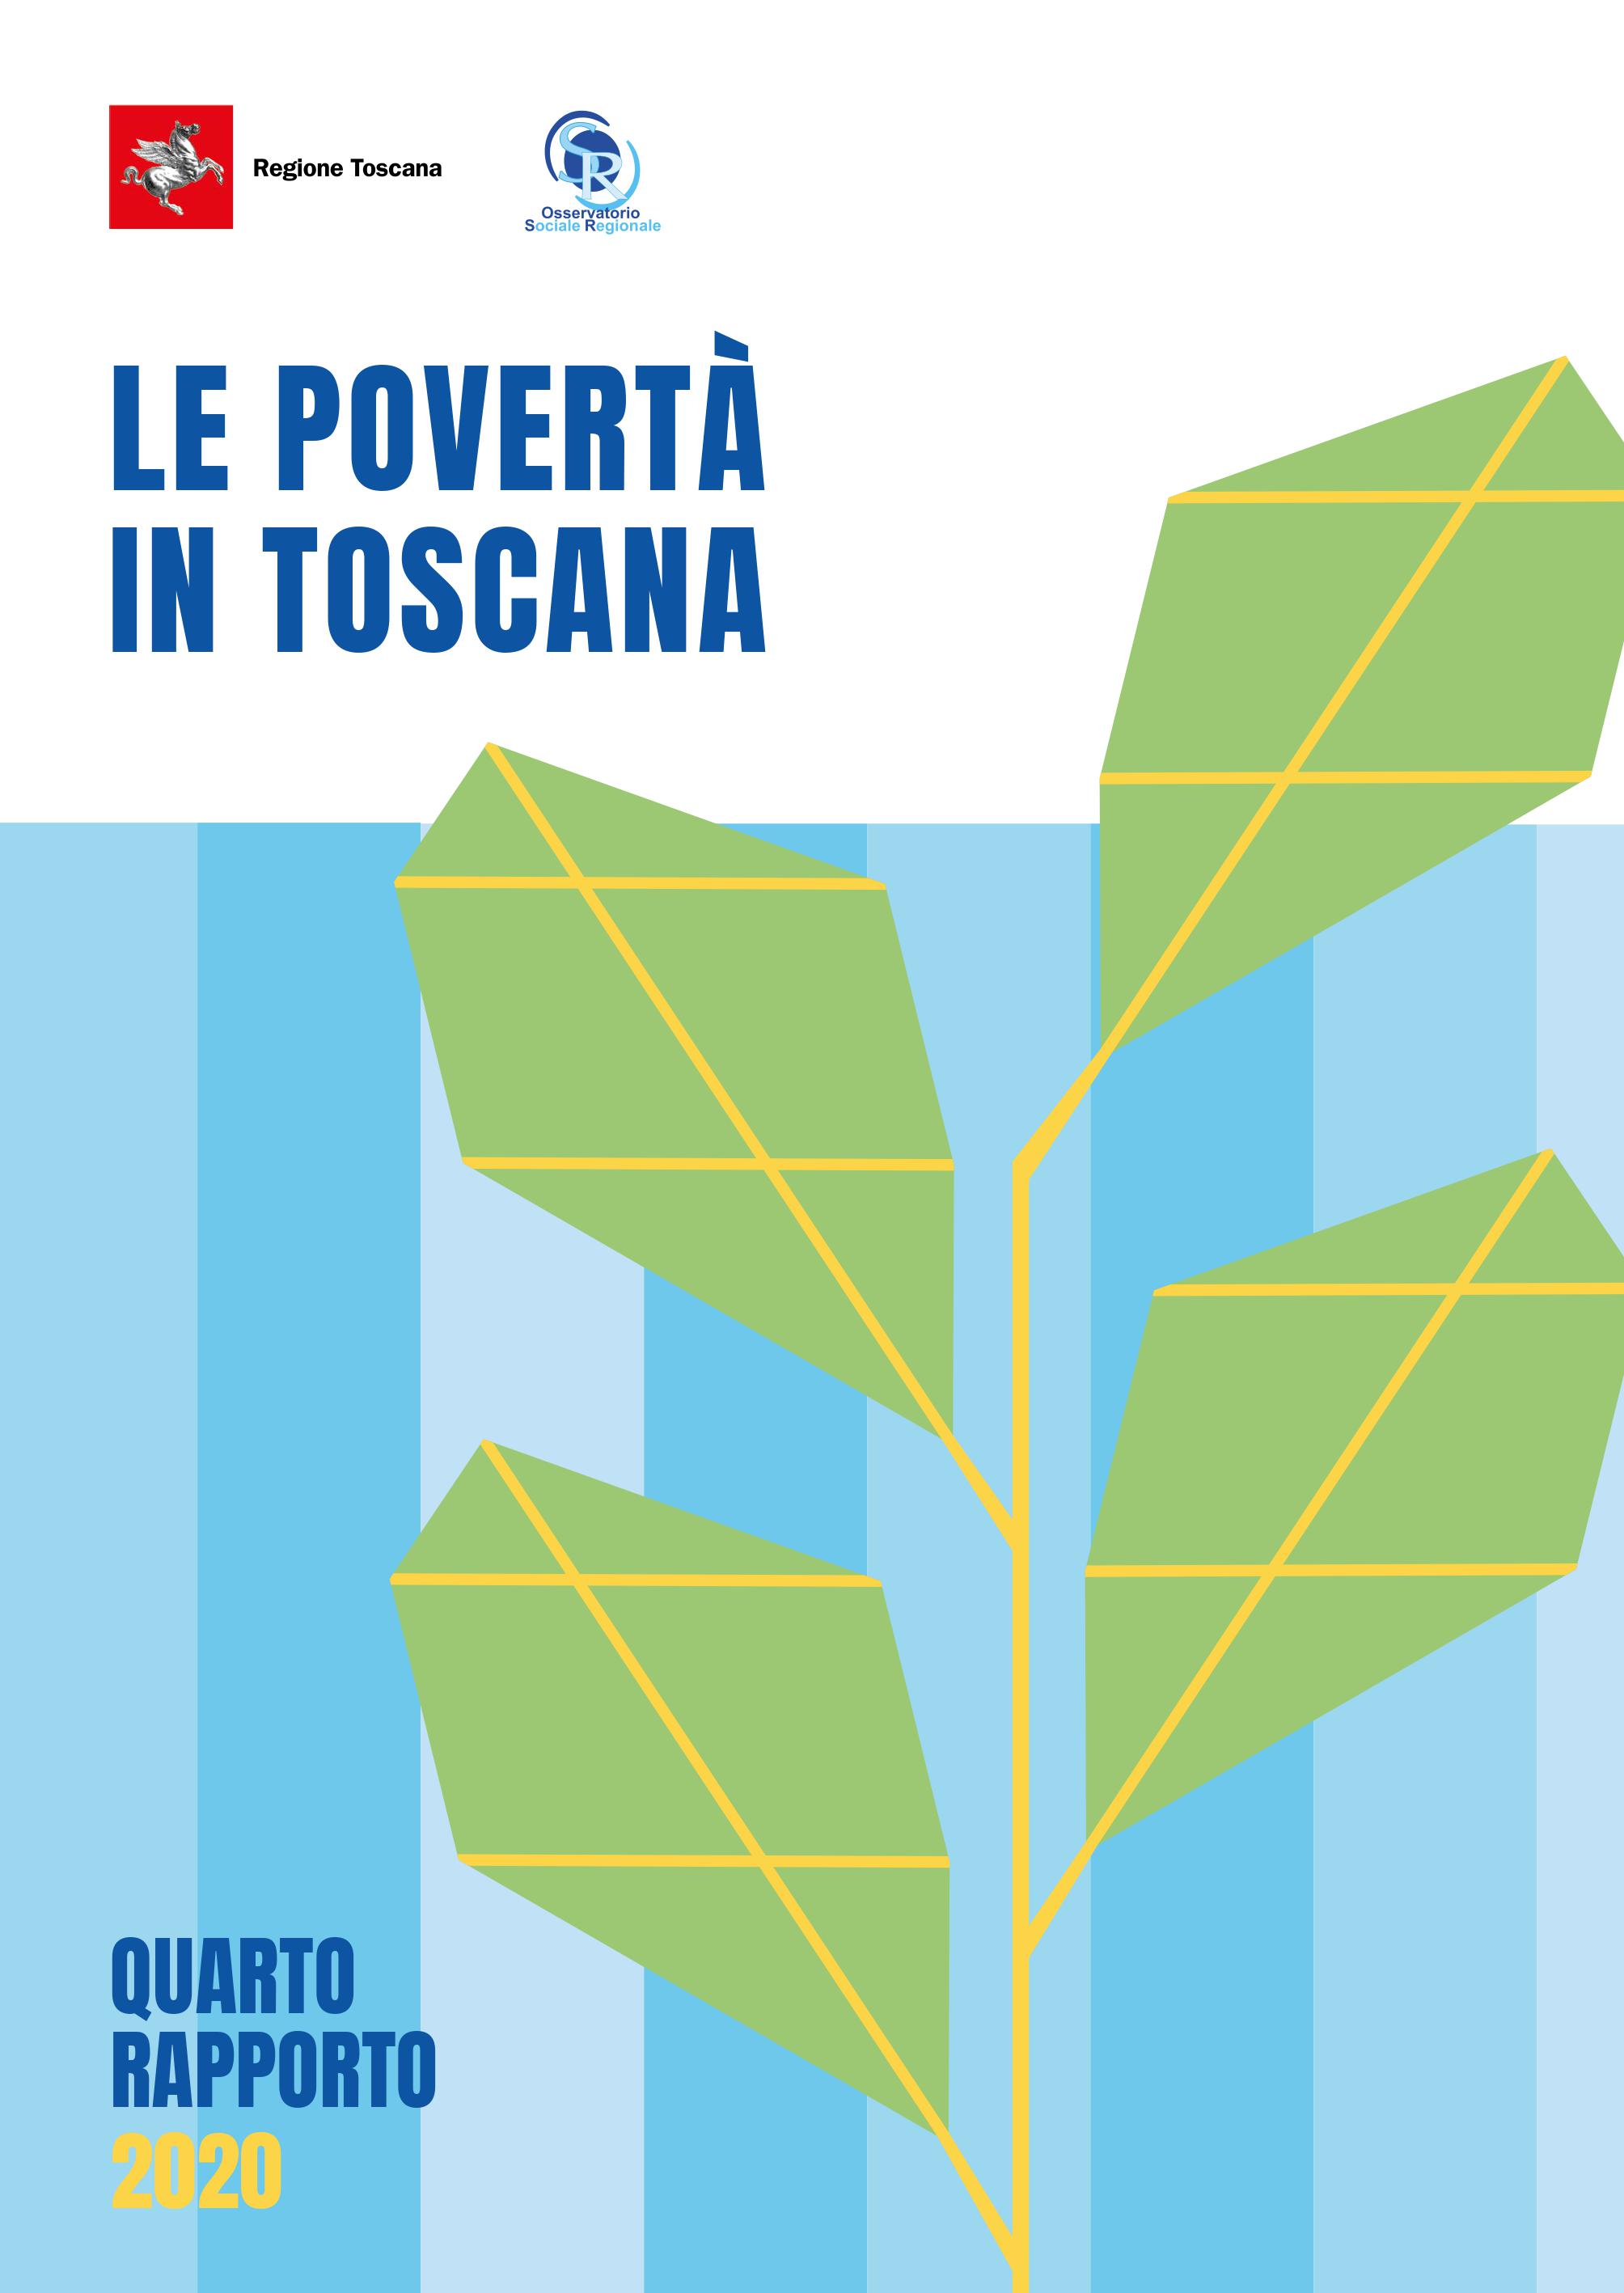 Venerdì 22 presentazione del rapporto su povertà in Toscana, conferenza stampa alle 12 